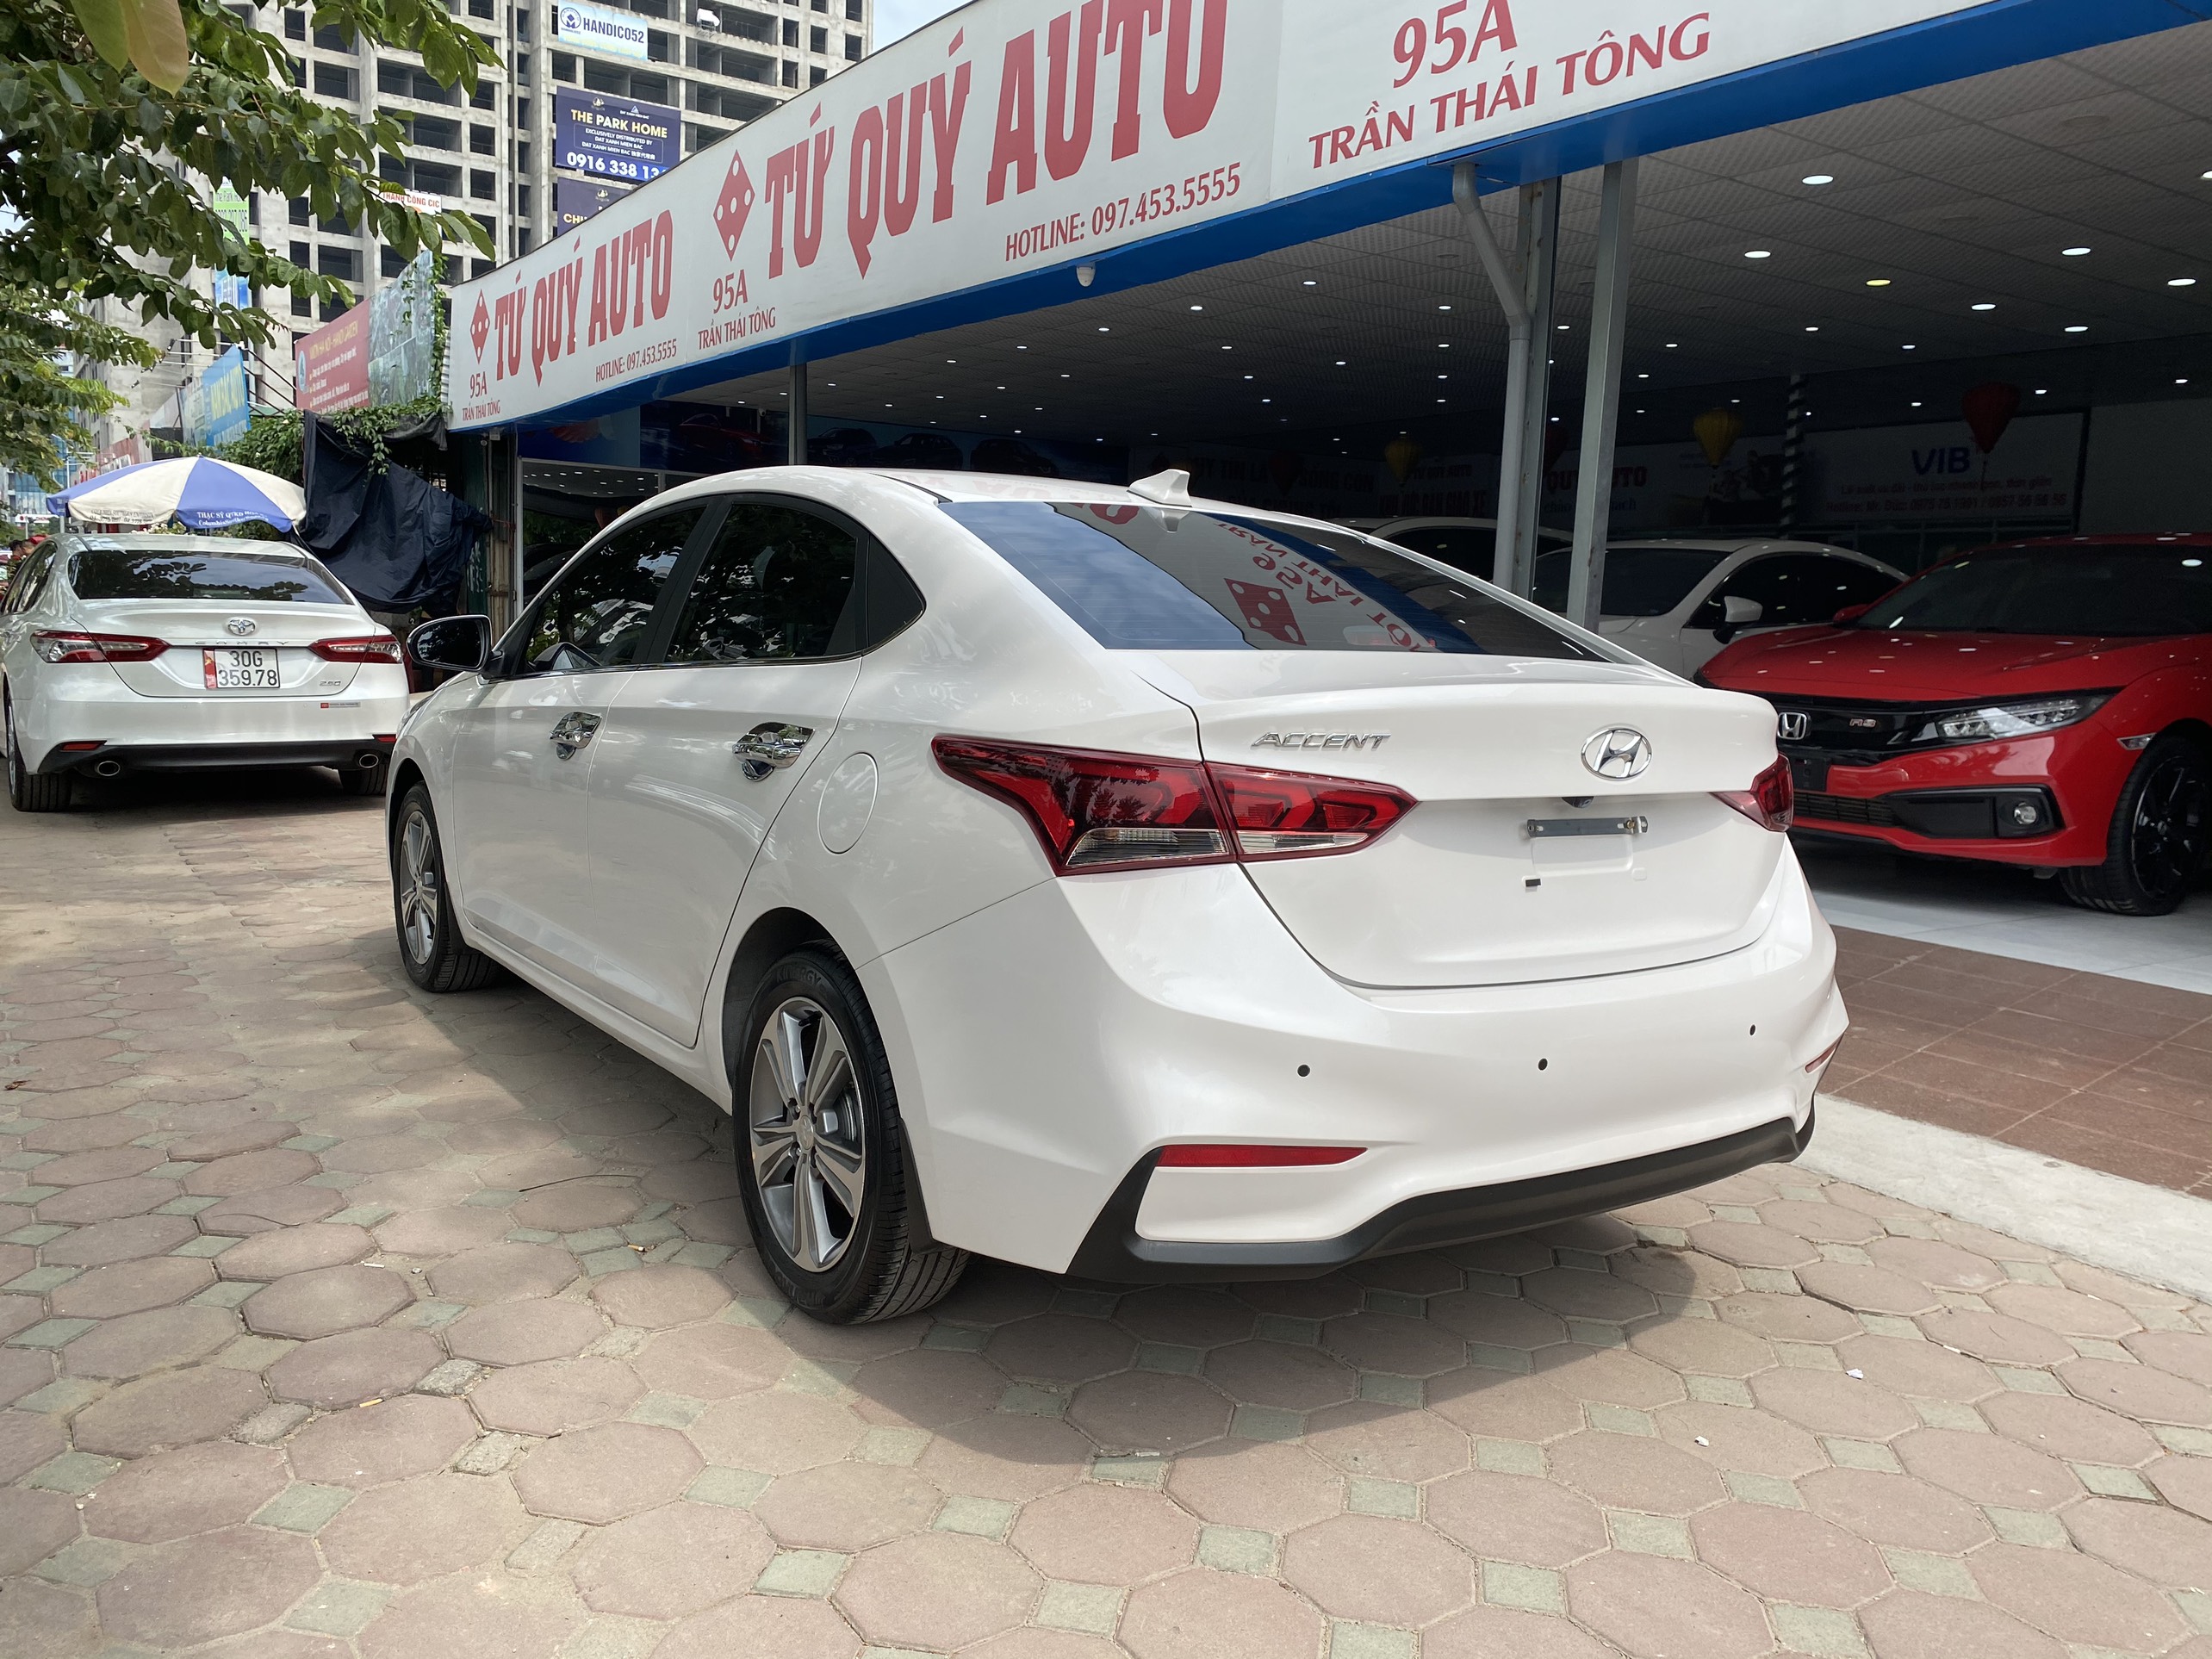 Hyundai Accent ATH 2020 - 4